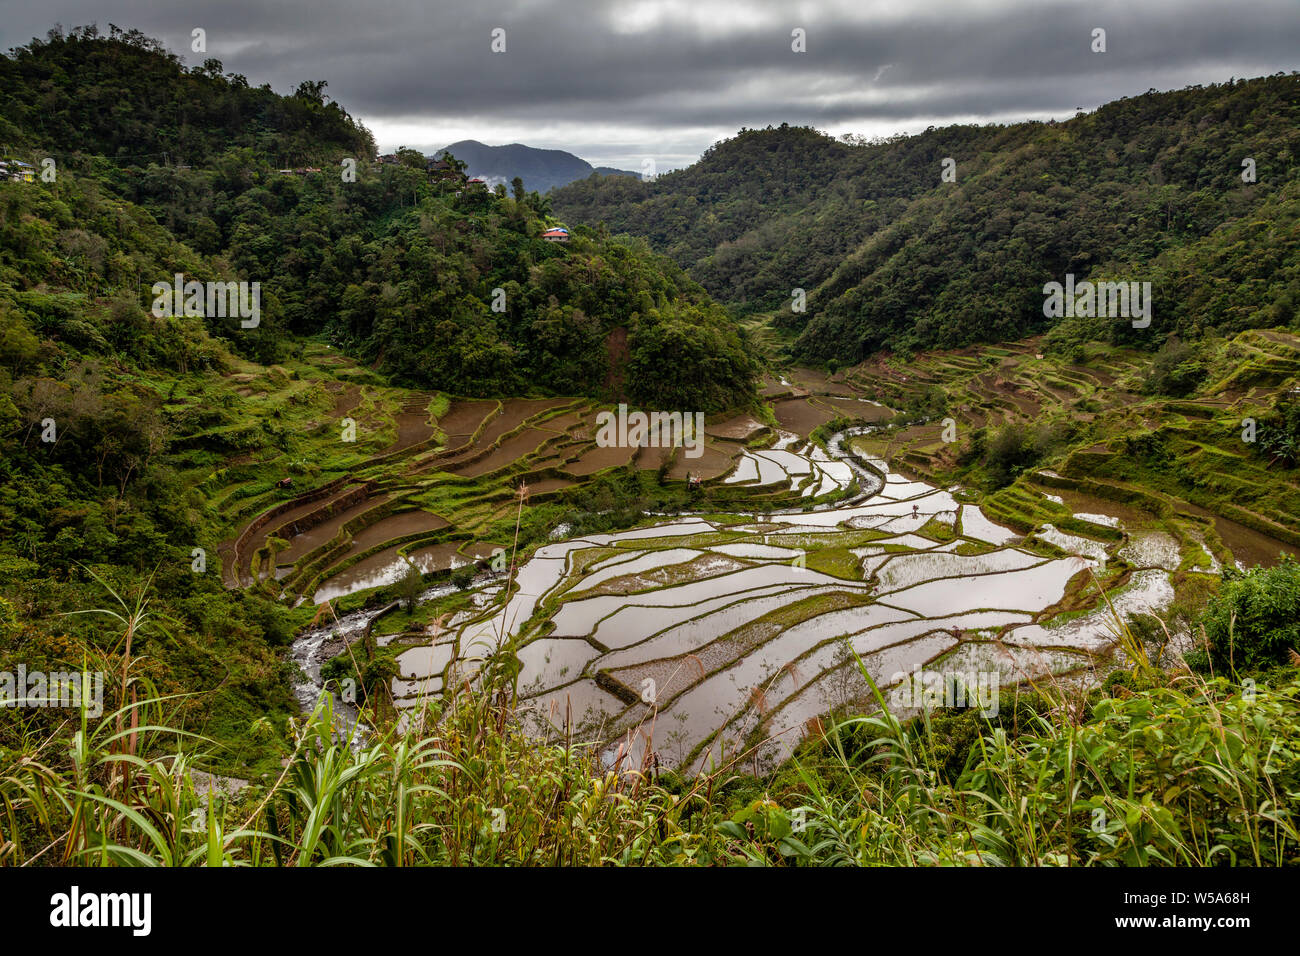 La cordillère des montagnes et rizières en terrasses près de Batad, Luzon, Philippines Banque D'Images